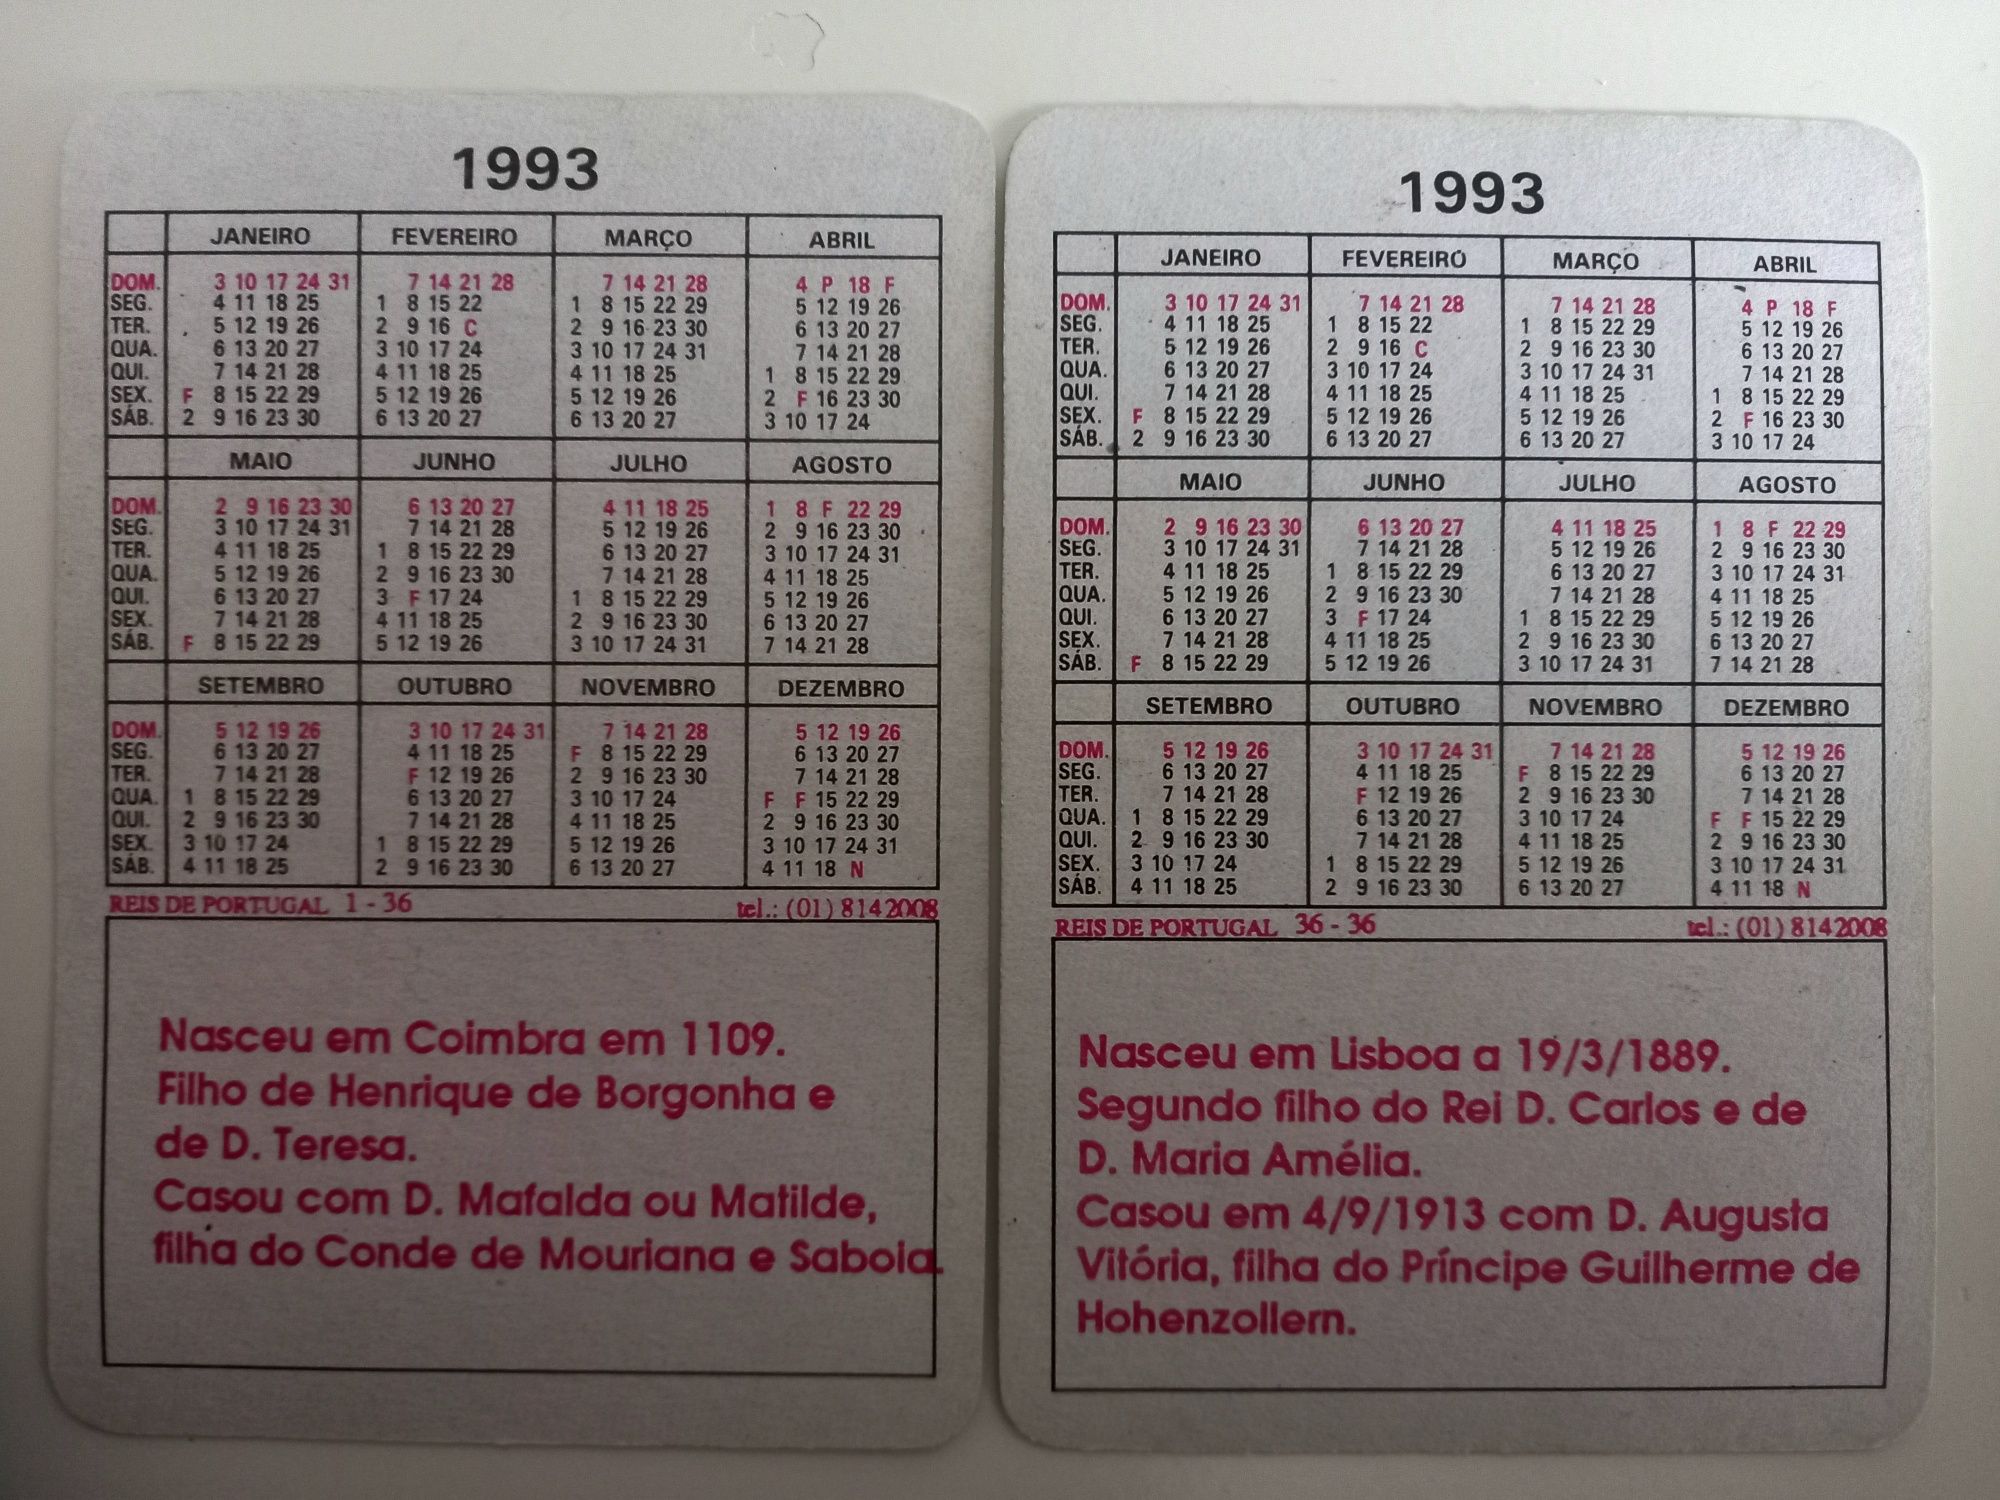 Coleção de 36 Calendários de bolso numerados tema "Reis de Portugal"